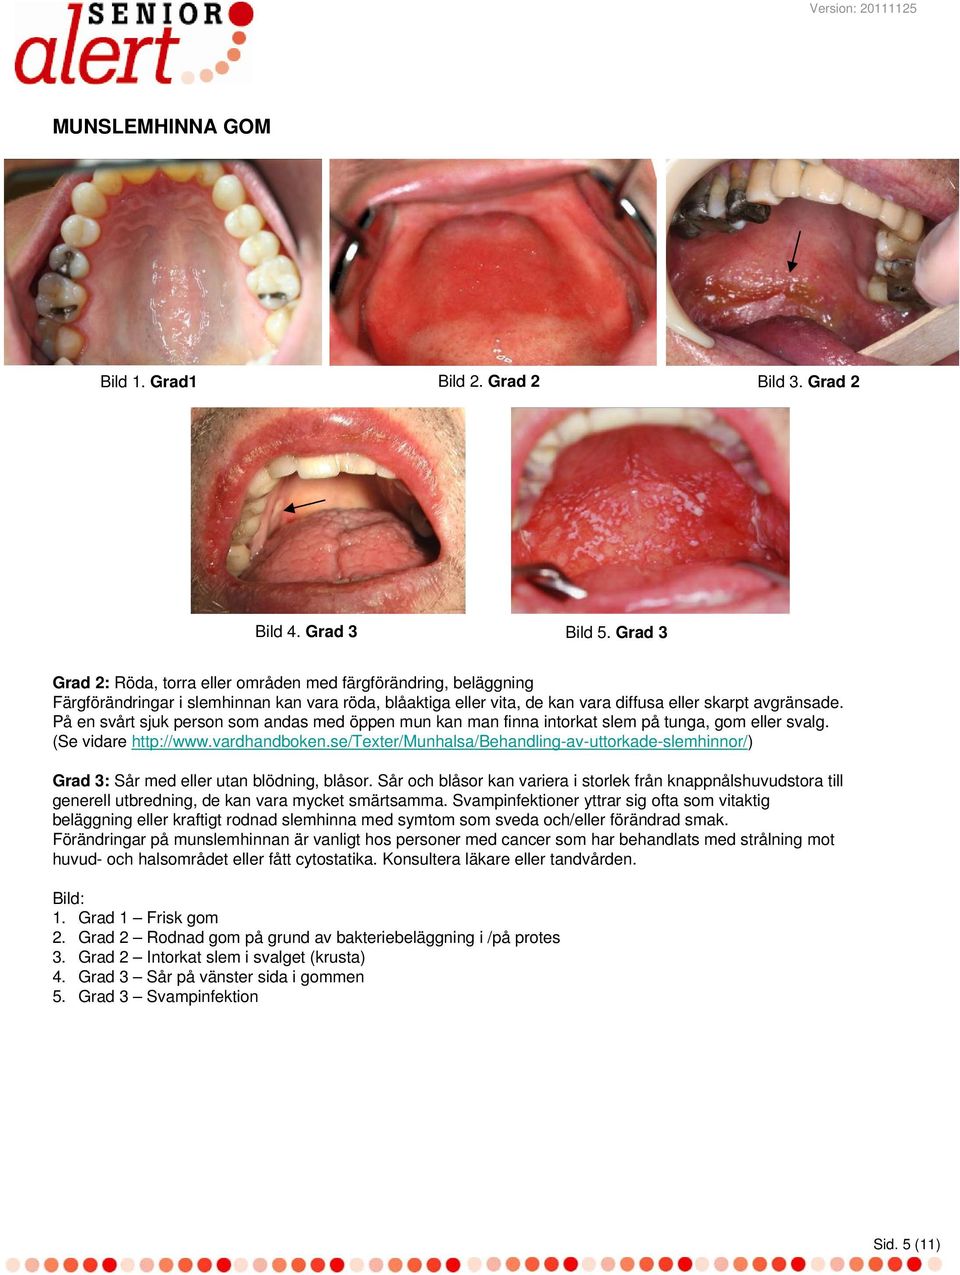 På en svårt sjuk person som andas med öppen mun kan man finna intorkat slem på tunga, gom eller svalg. (Se vidare http://www.vardhandboken.